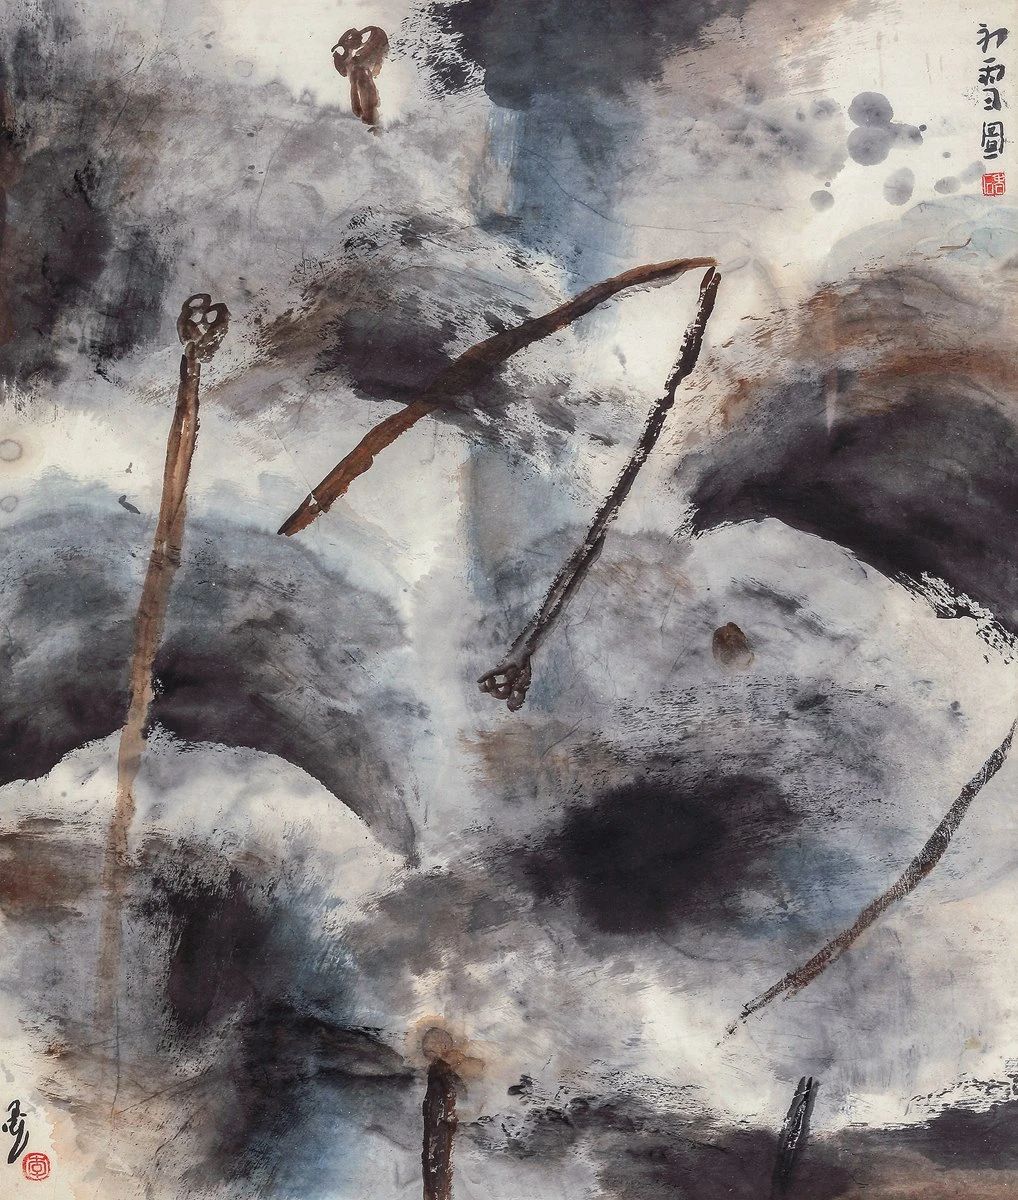 李老十先生的绘画作品大多是一些残荷败柳，有八大山人的画意